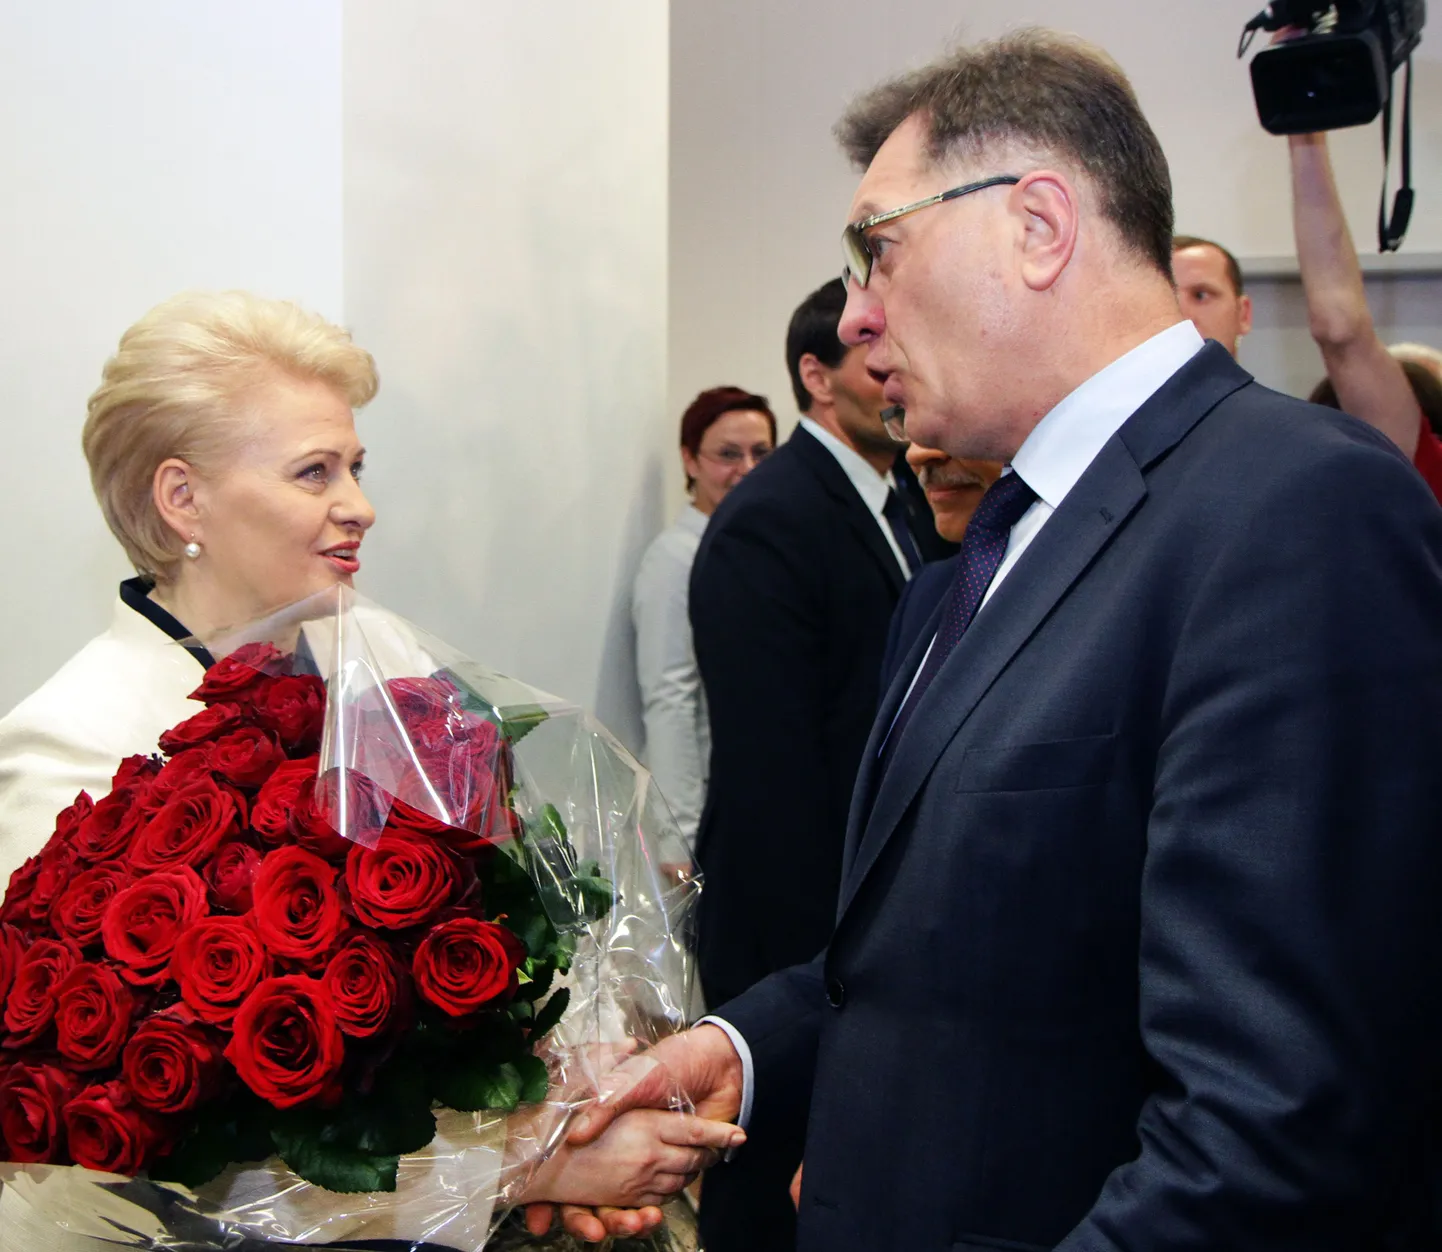 Leedu president Dalia Grybauskaitė (vasakul) ja sotsiaaldemokraadist peaminister Algirdas Butkevičius.